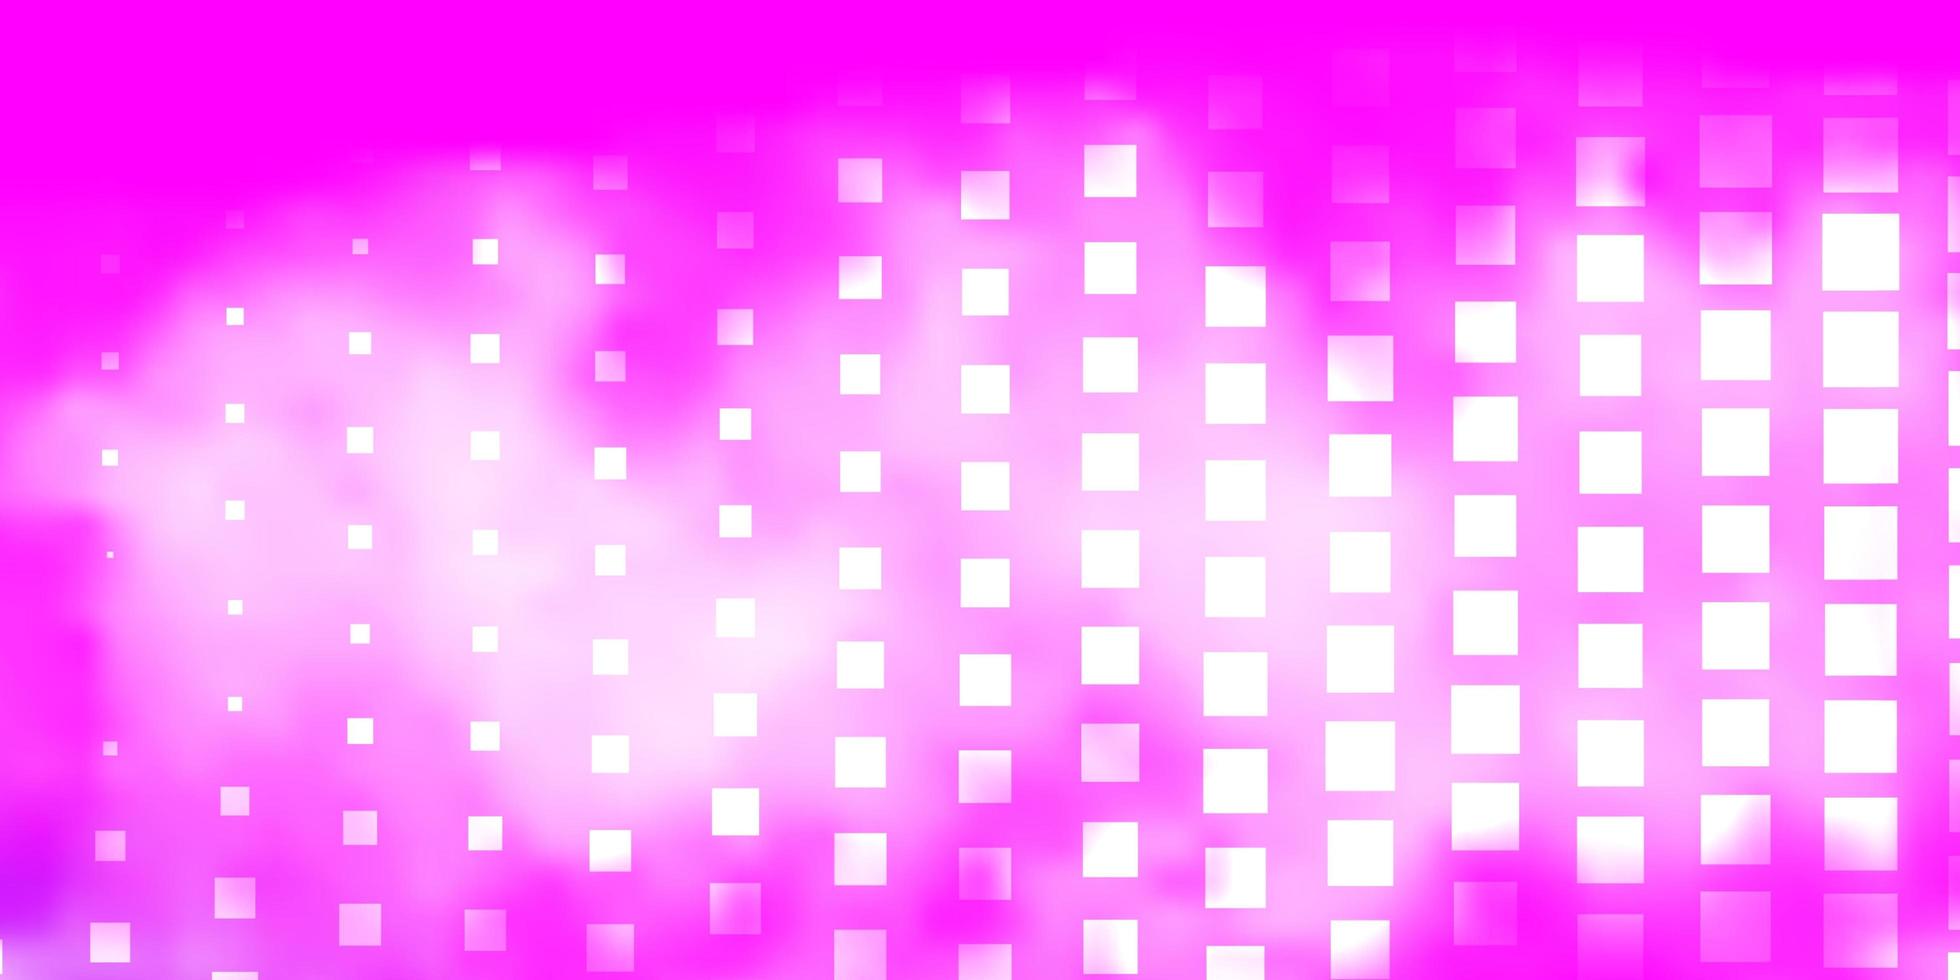 Telón de fondo de vector rosa claro con rectángulos.